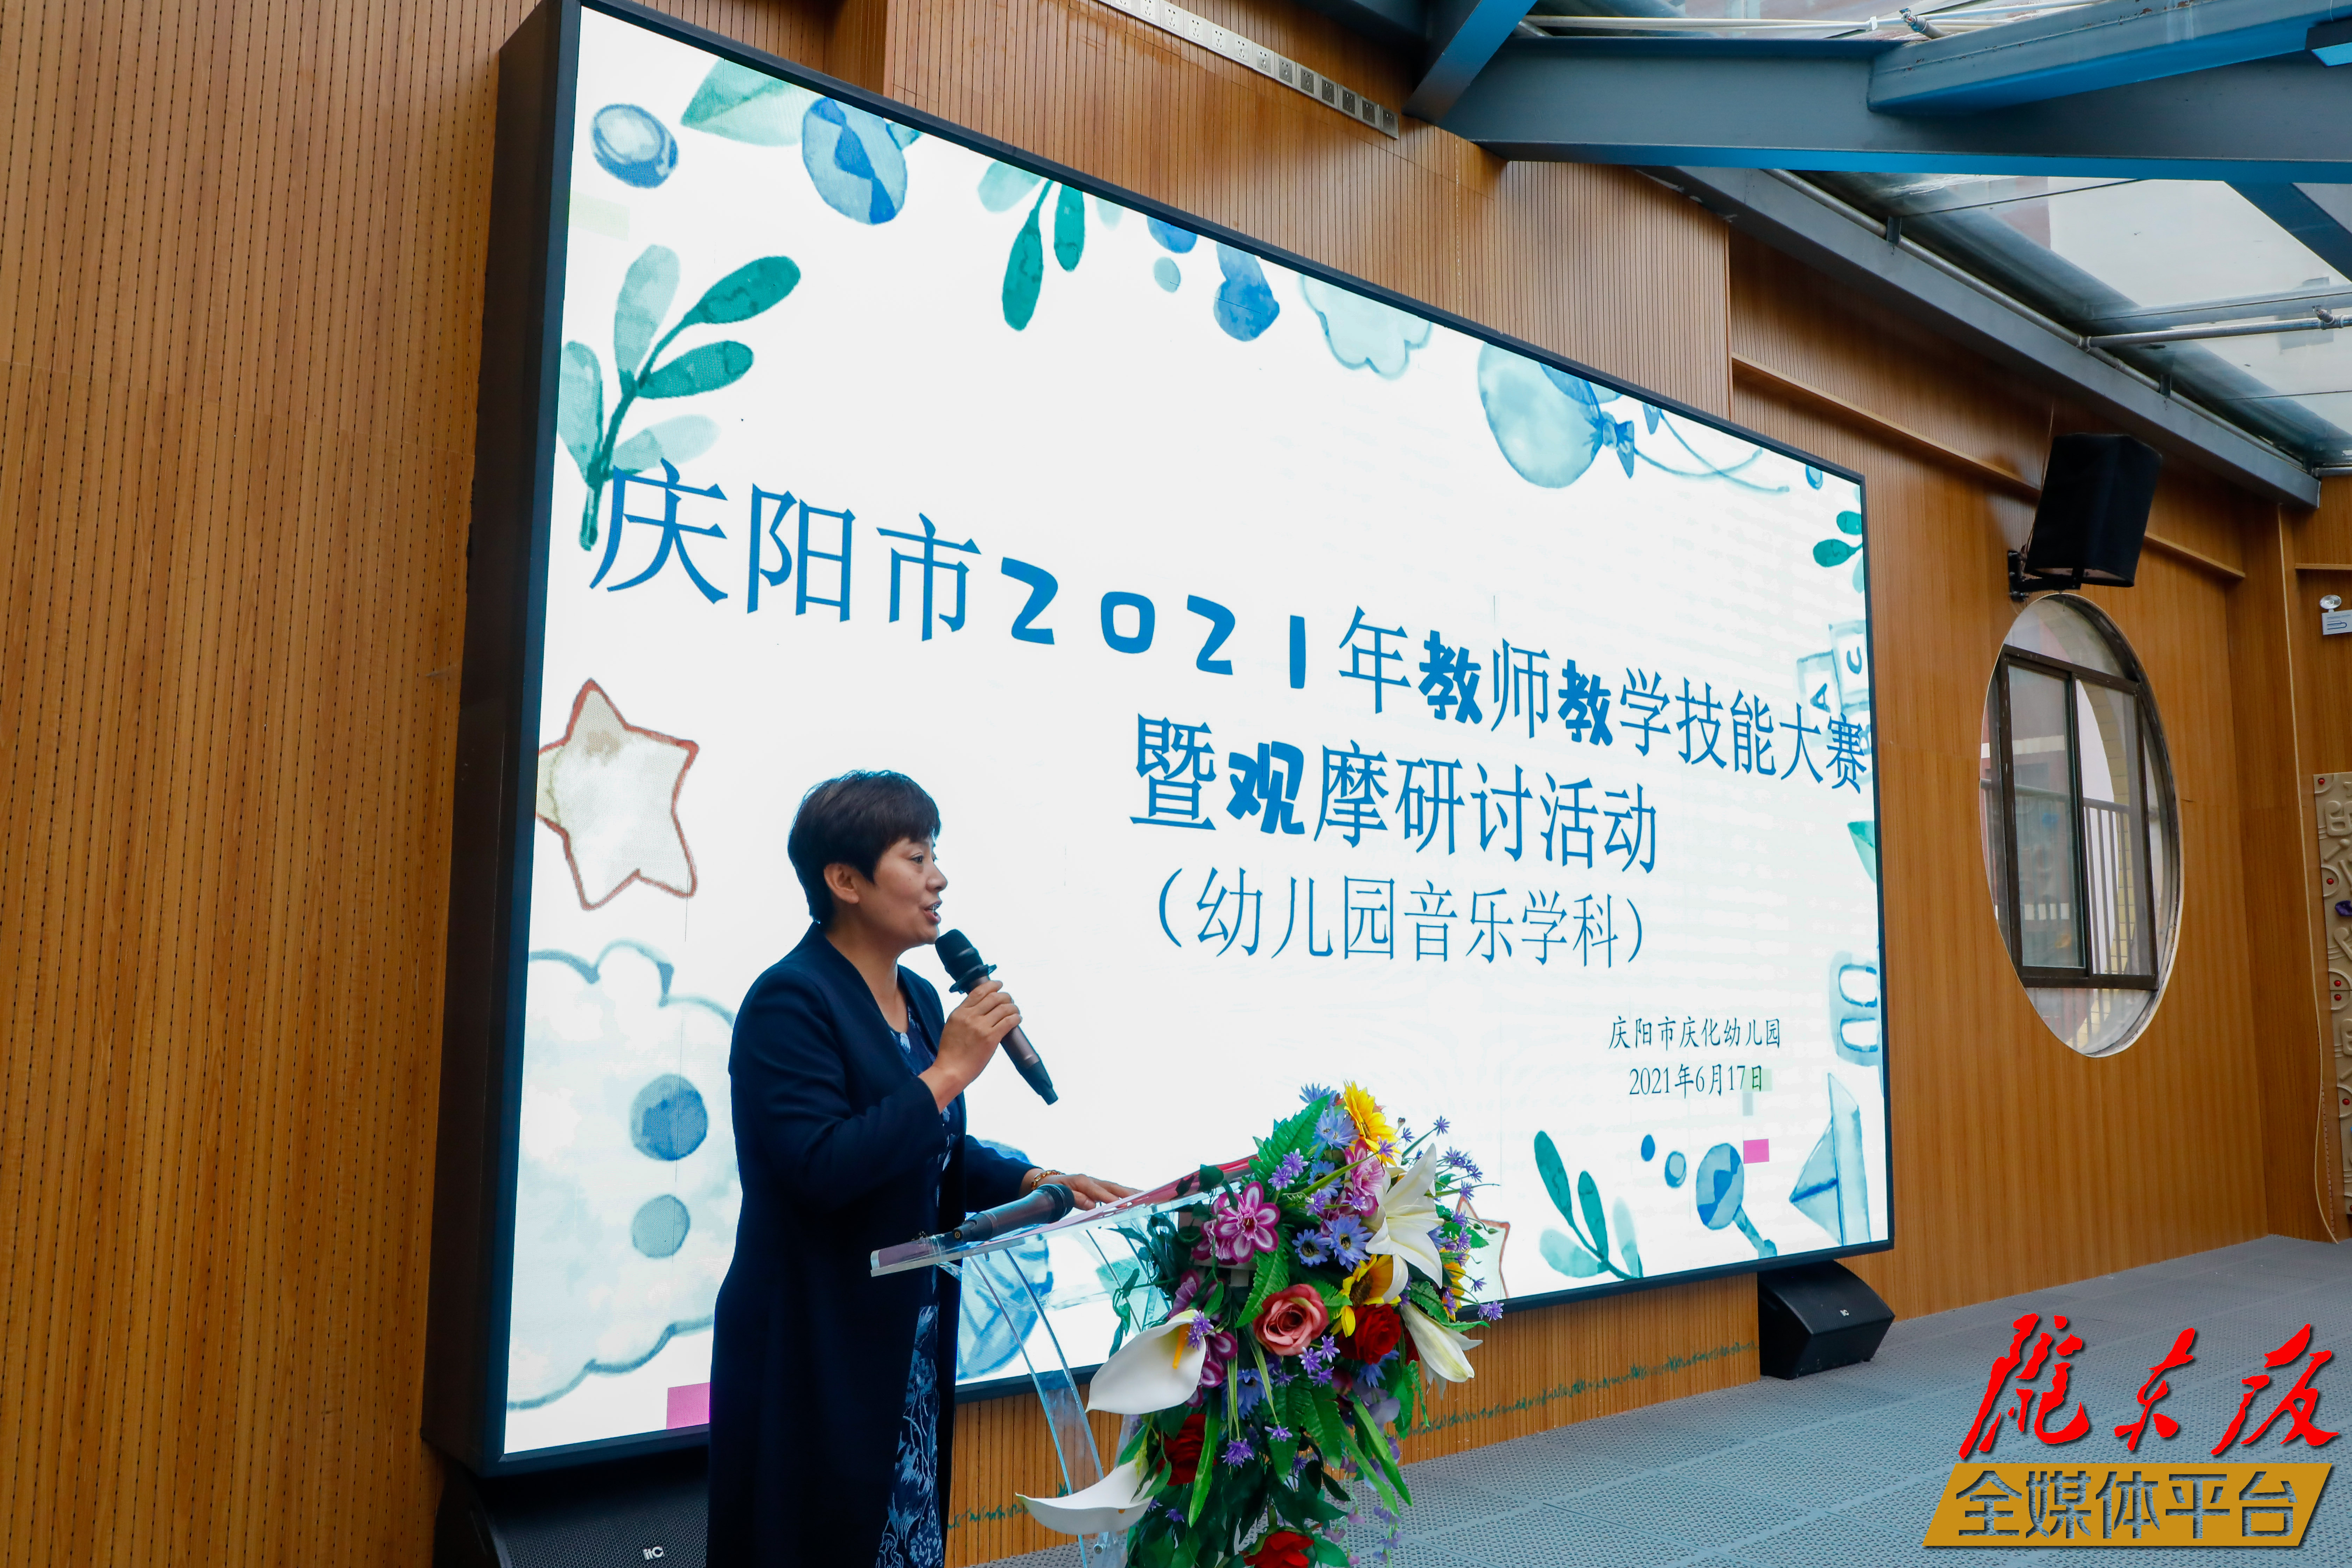 2021年庆阳市教师教学技能大赛暨观摩研讨活动（幼儿园音乐学科）在庆化幼儿园举行